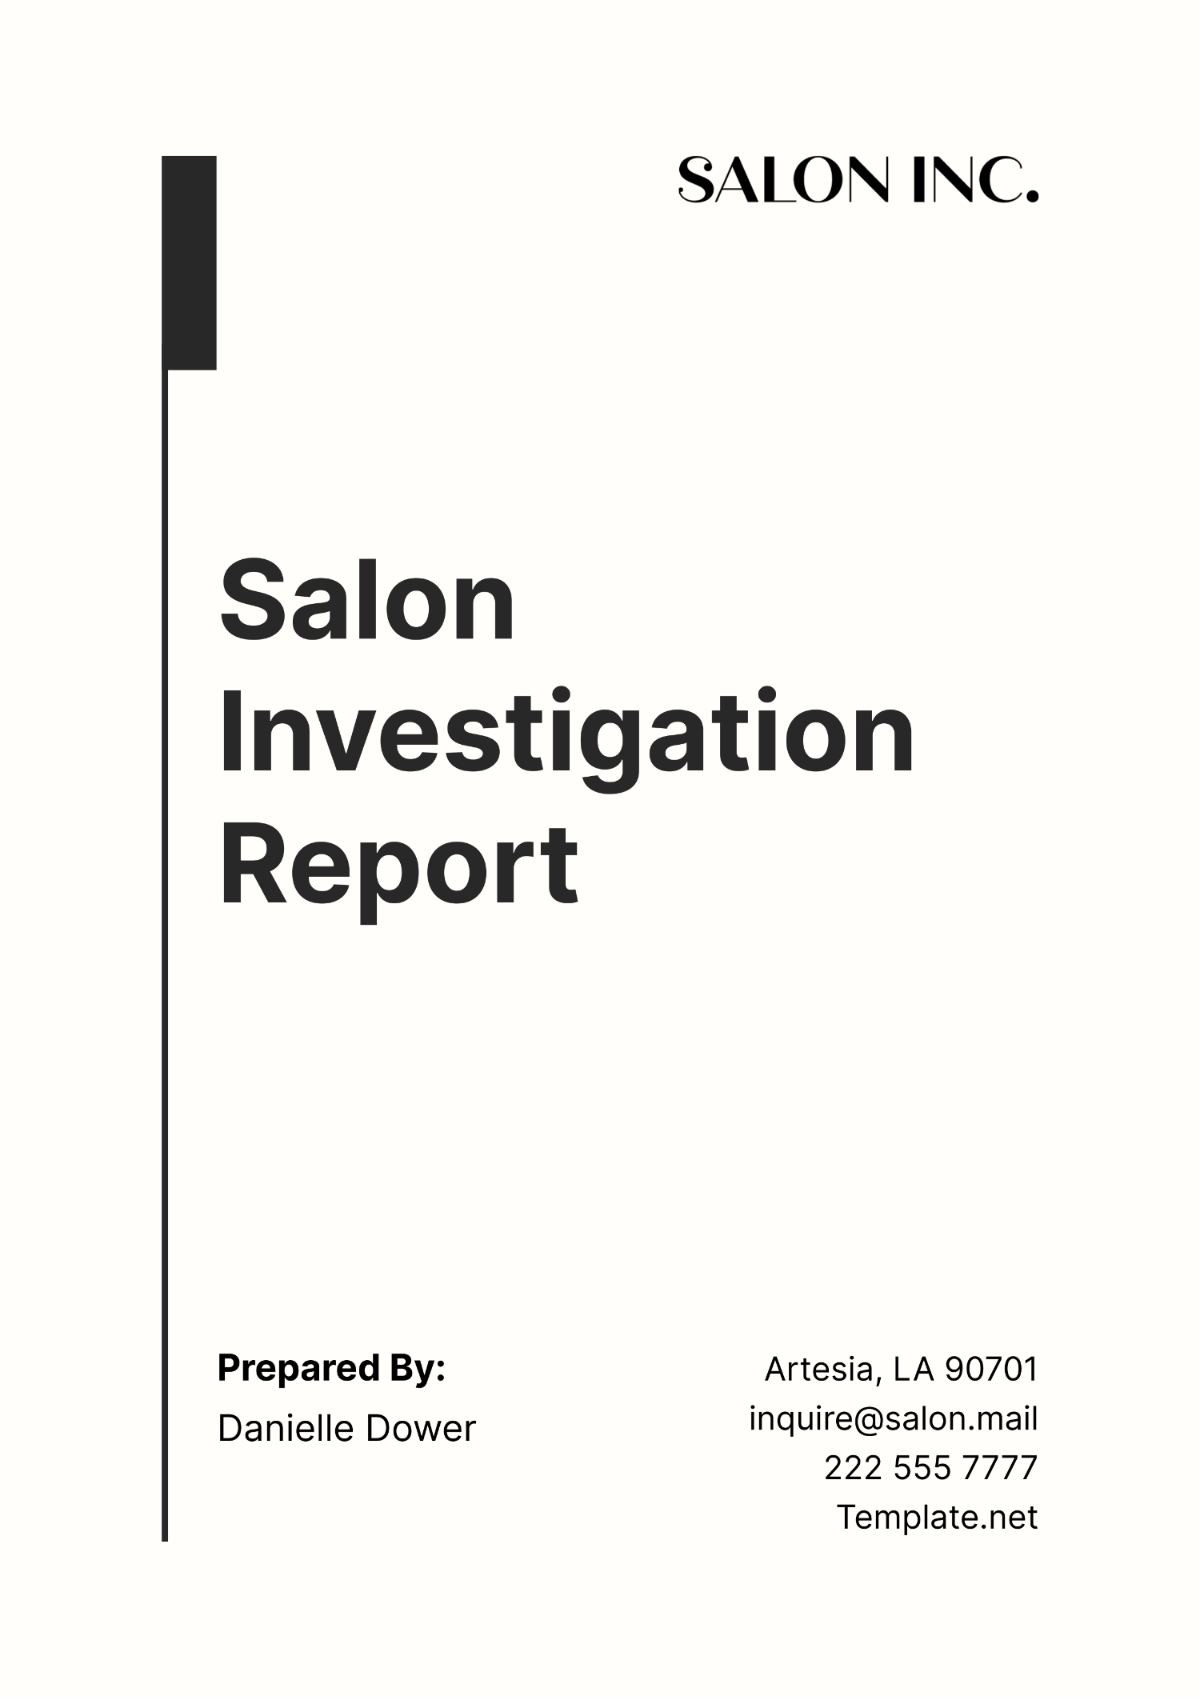 Salon Investigation Report Template